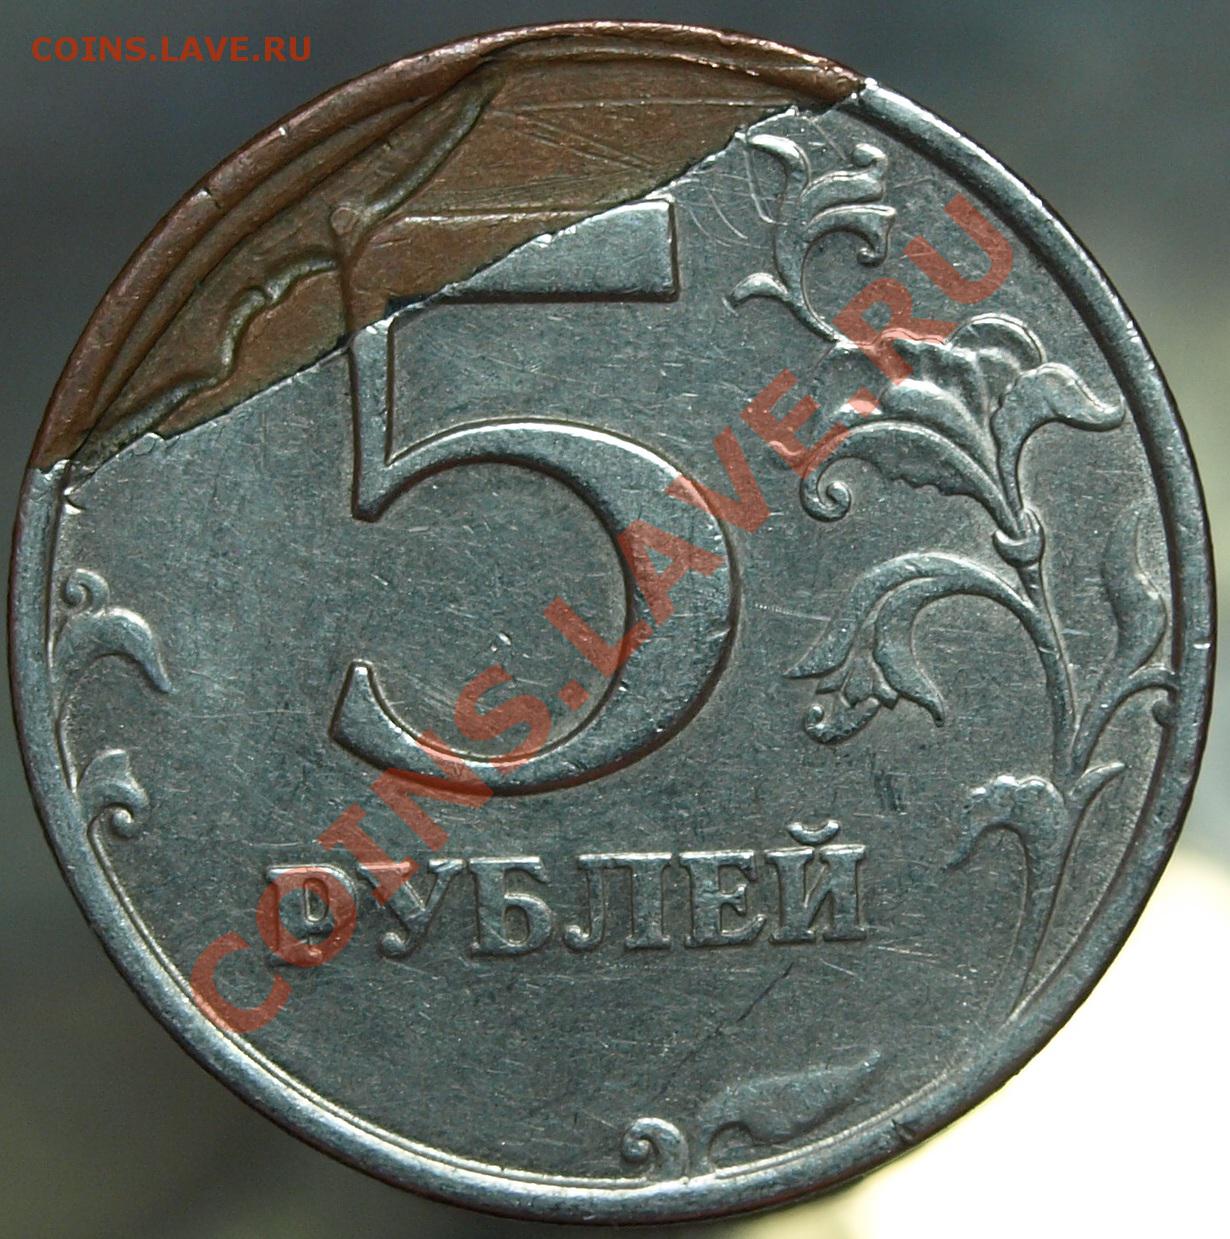 5 рублей 98. Брак монеты 5 рублей 1998 года. 5 Рублей 1998 брак. 5 Рублей 1998 года брак. 5 Рублей 98 ММД.